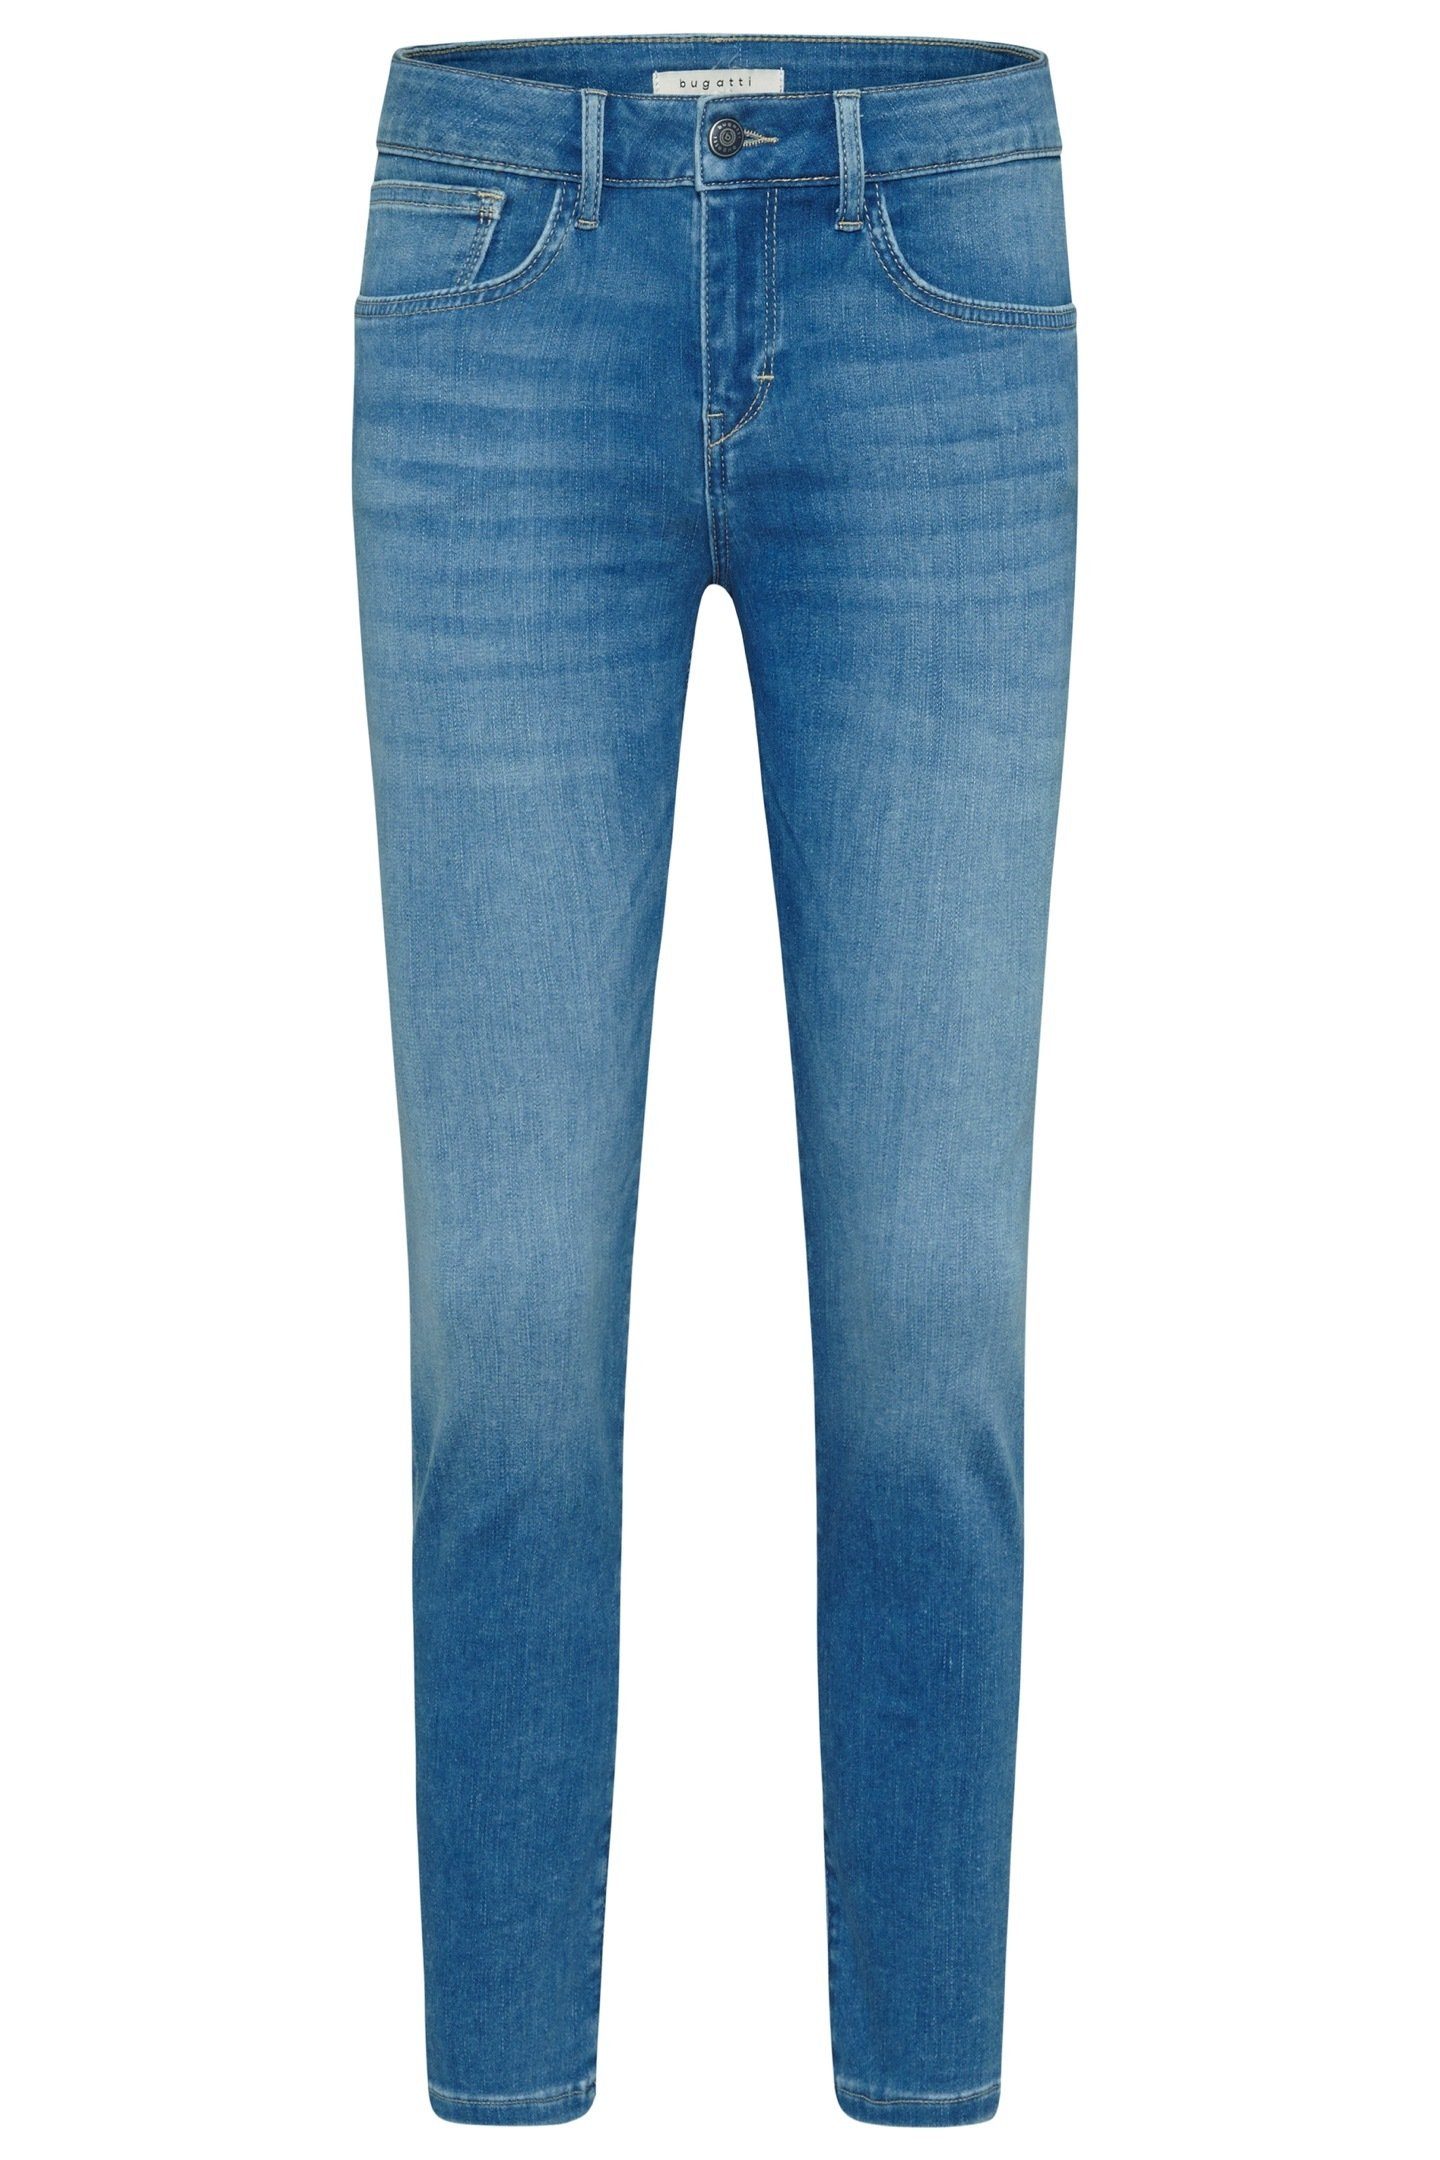 hellblau Optik bugatti coolen einer in 5-Pocket-Jeans